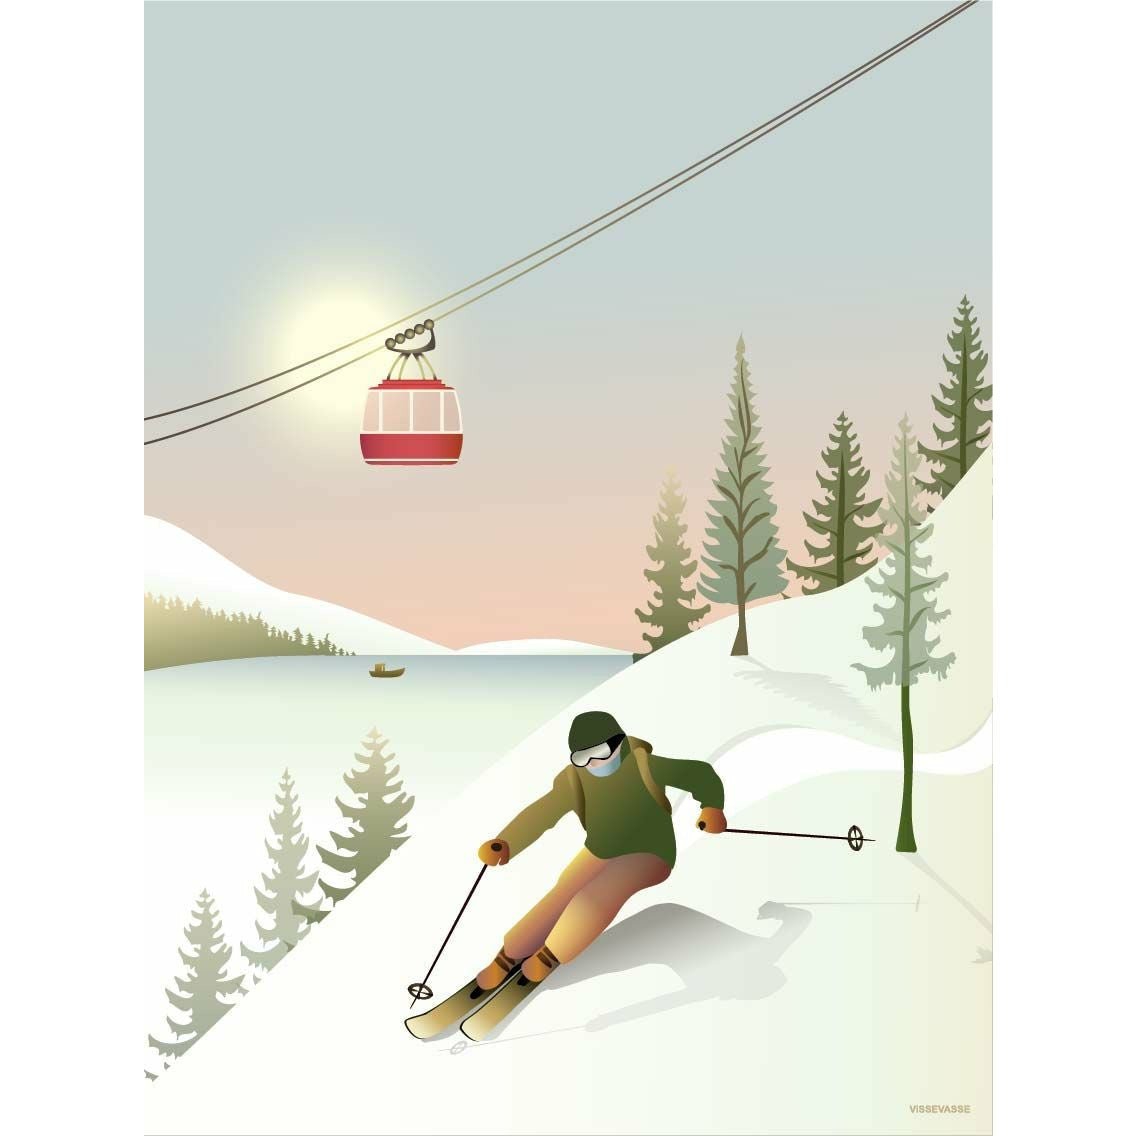 Vissevasse Offpiste Skiing Plakat, 50x70 cm